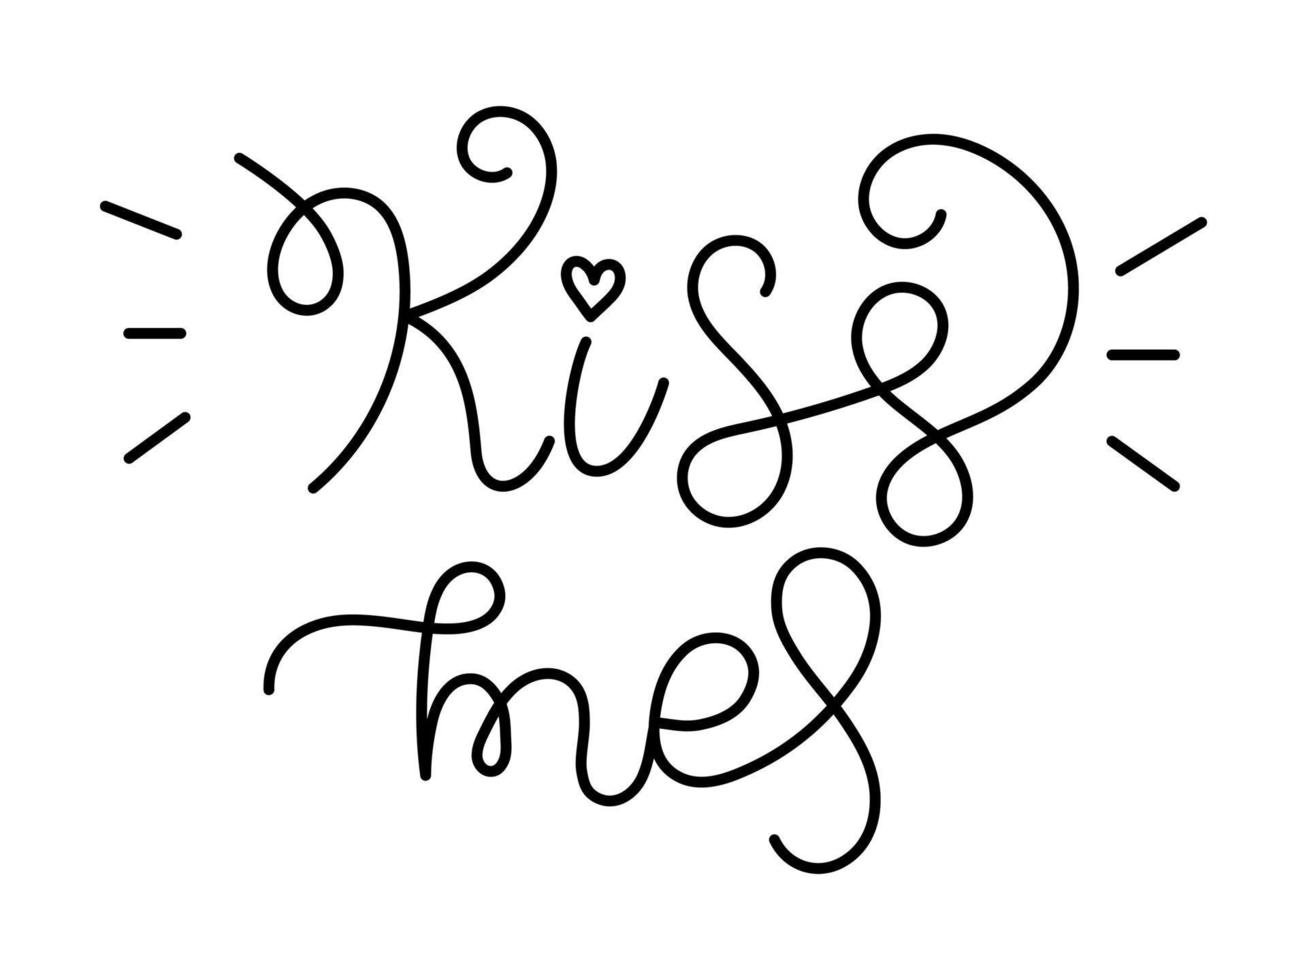 Vektor-Valentinstag-handgeschriebener Schriftzug. Küss mich Text. romantische zitate für grußkarten, banner und anderes design. vektor